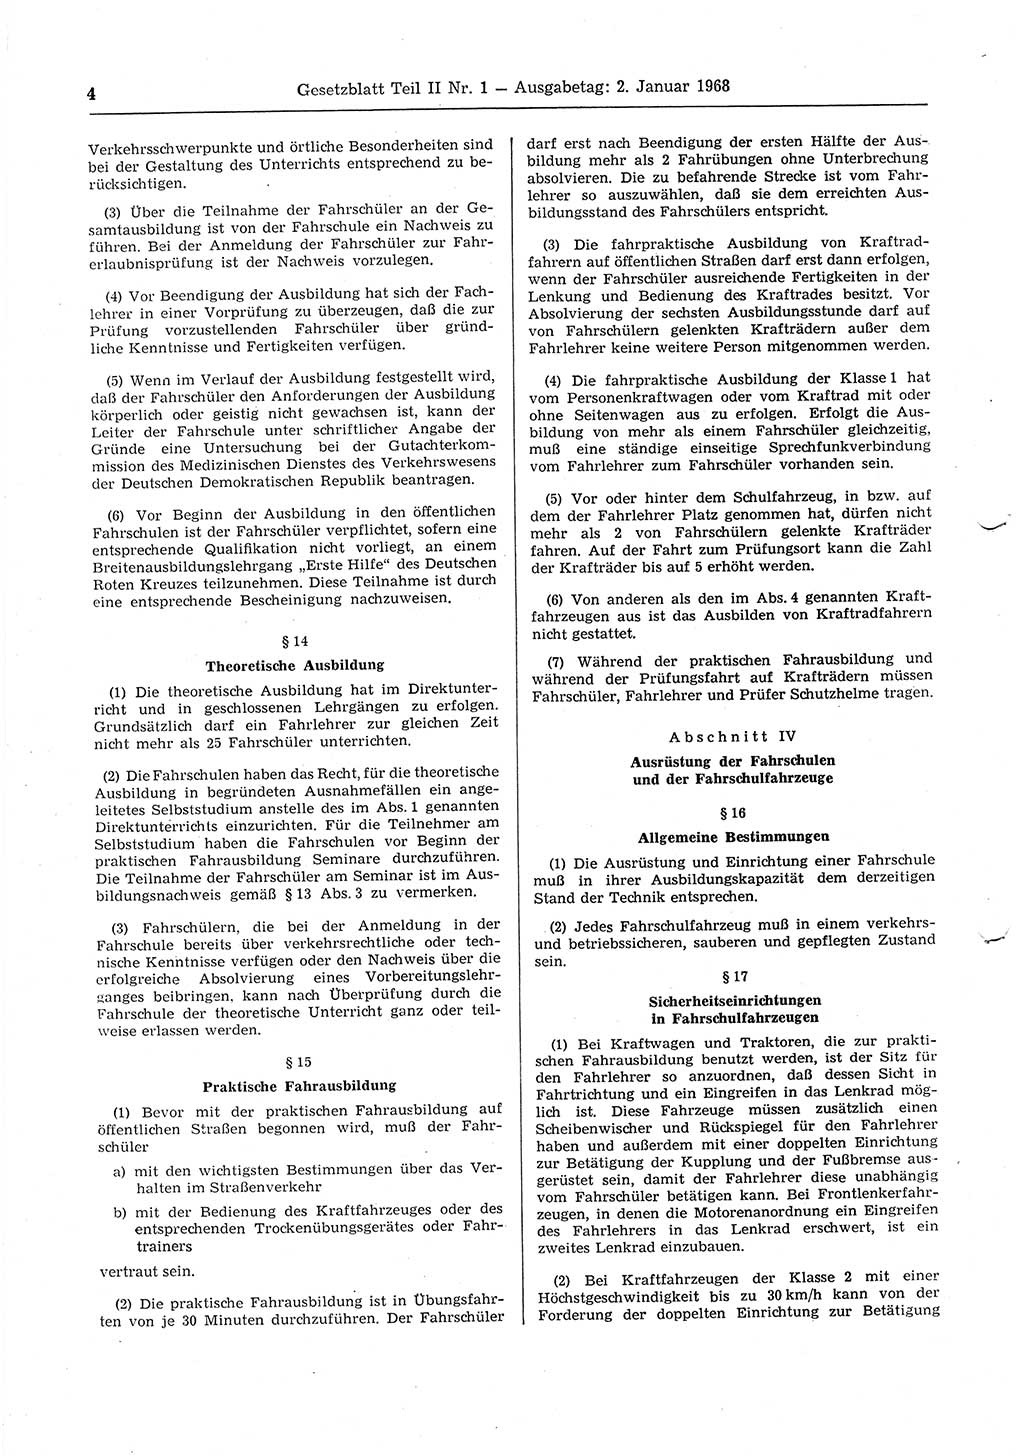 Gesetzblatt (GBl.) der Deutschen Demokratischen Republik (DDR) Teil ⅠⅠ 1968, Seite 4 (GBl. DDR ⅠⅠ 1968, S. 4)